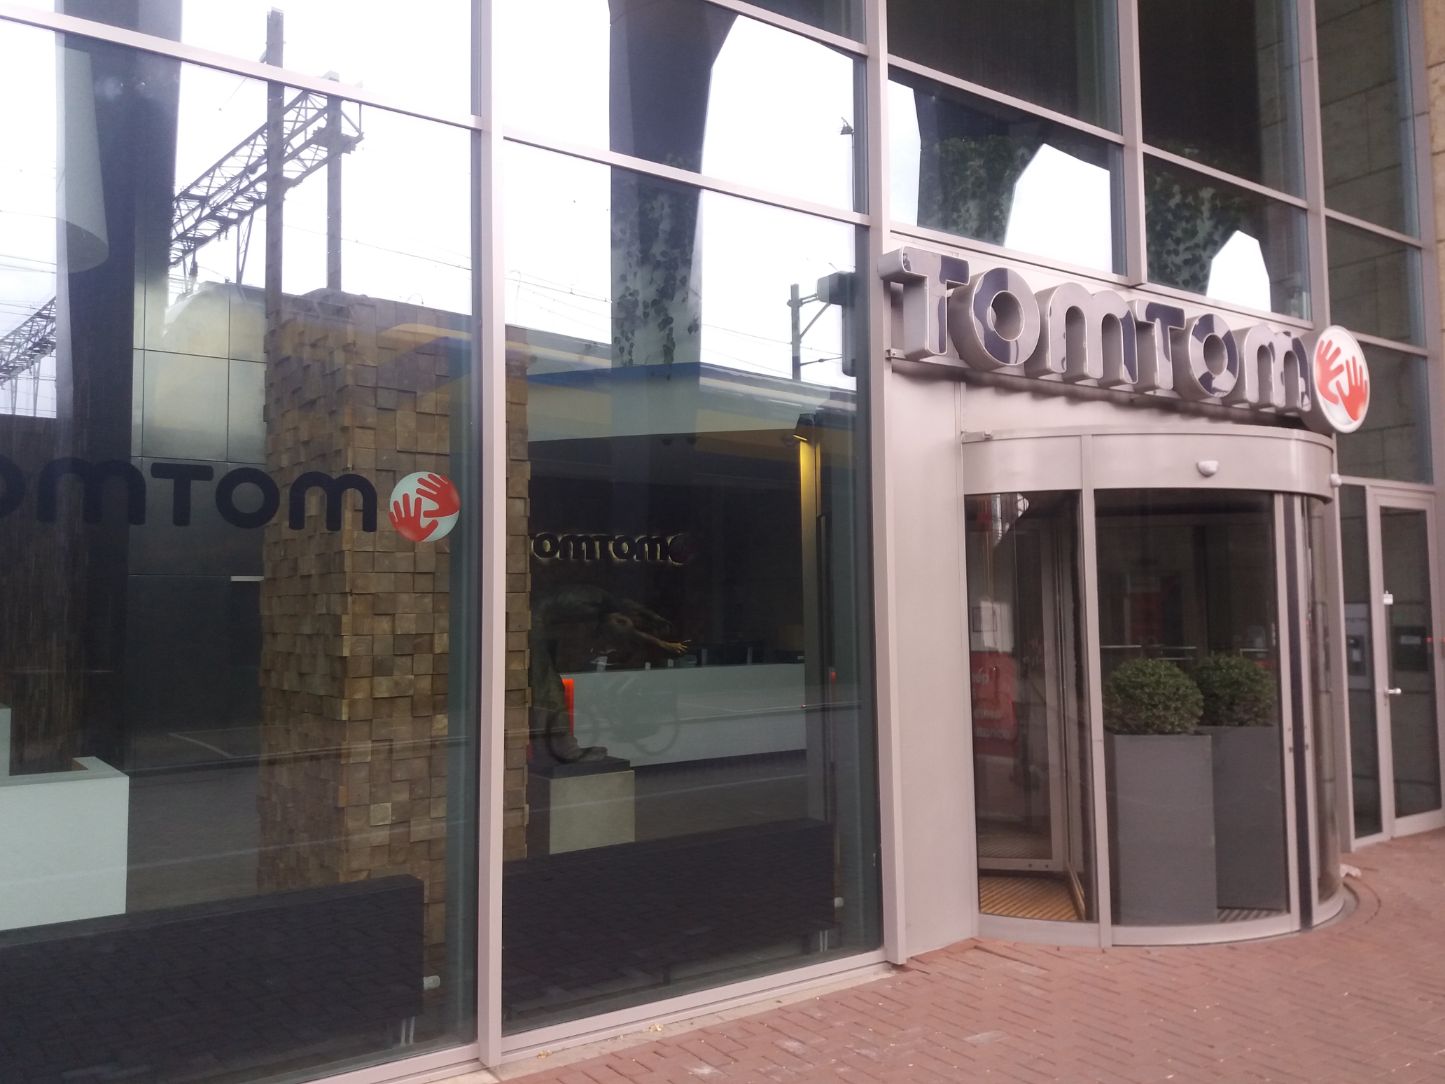 TomTom-hoofdkantoor Amsterdam